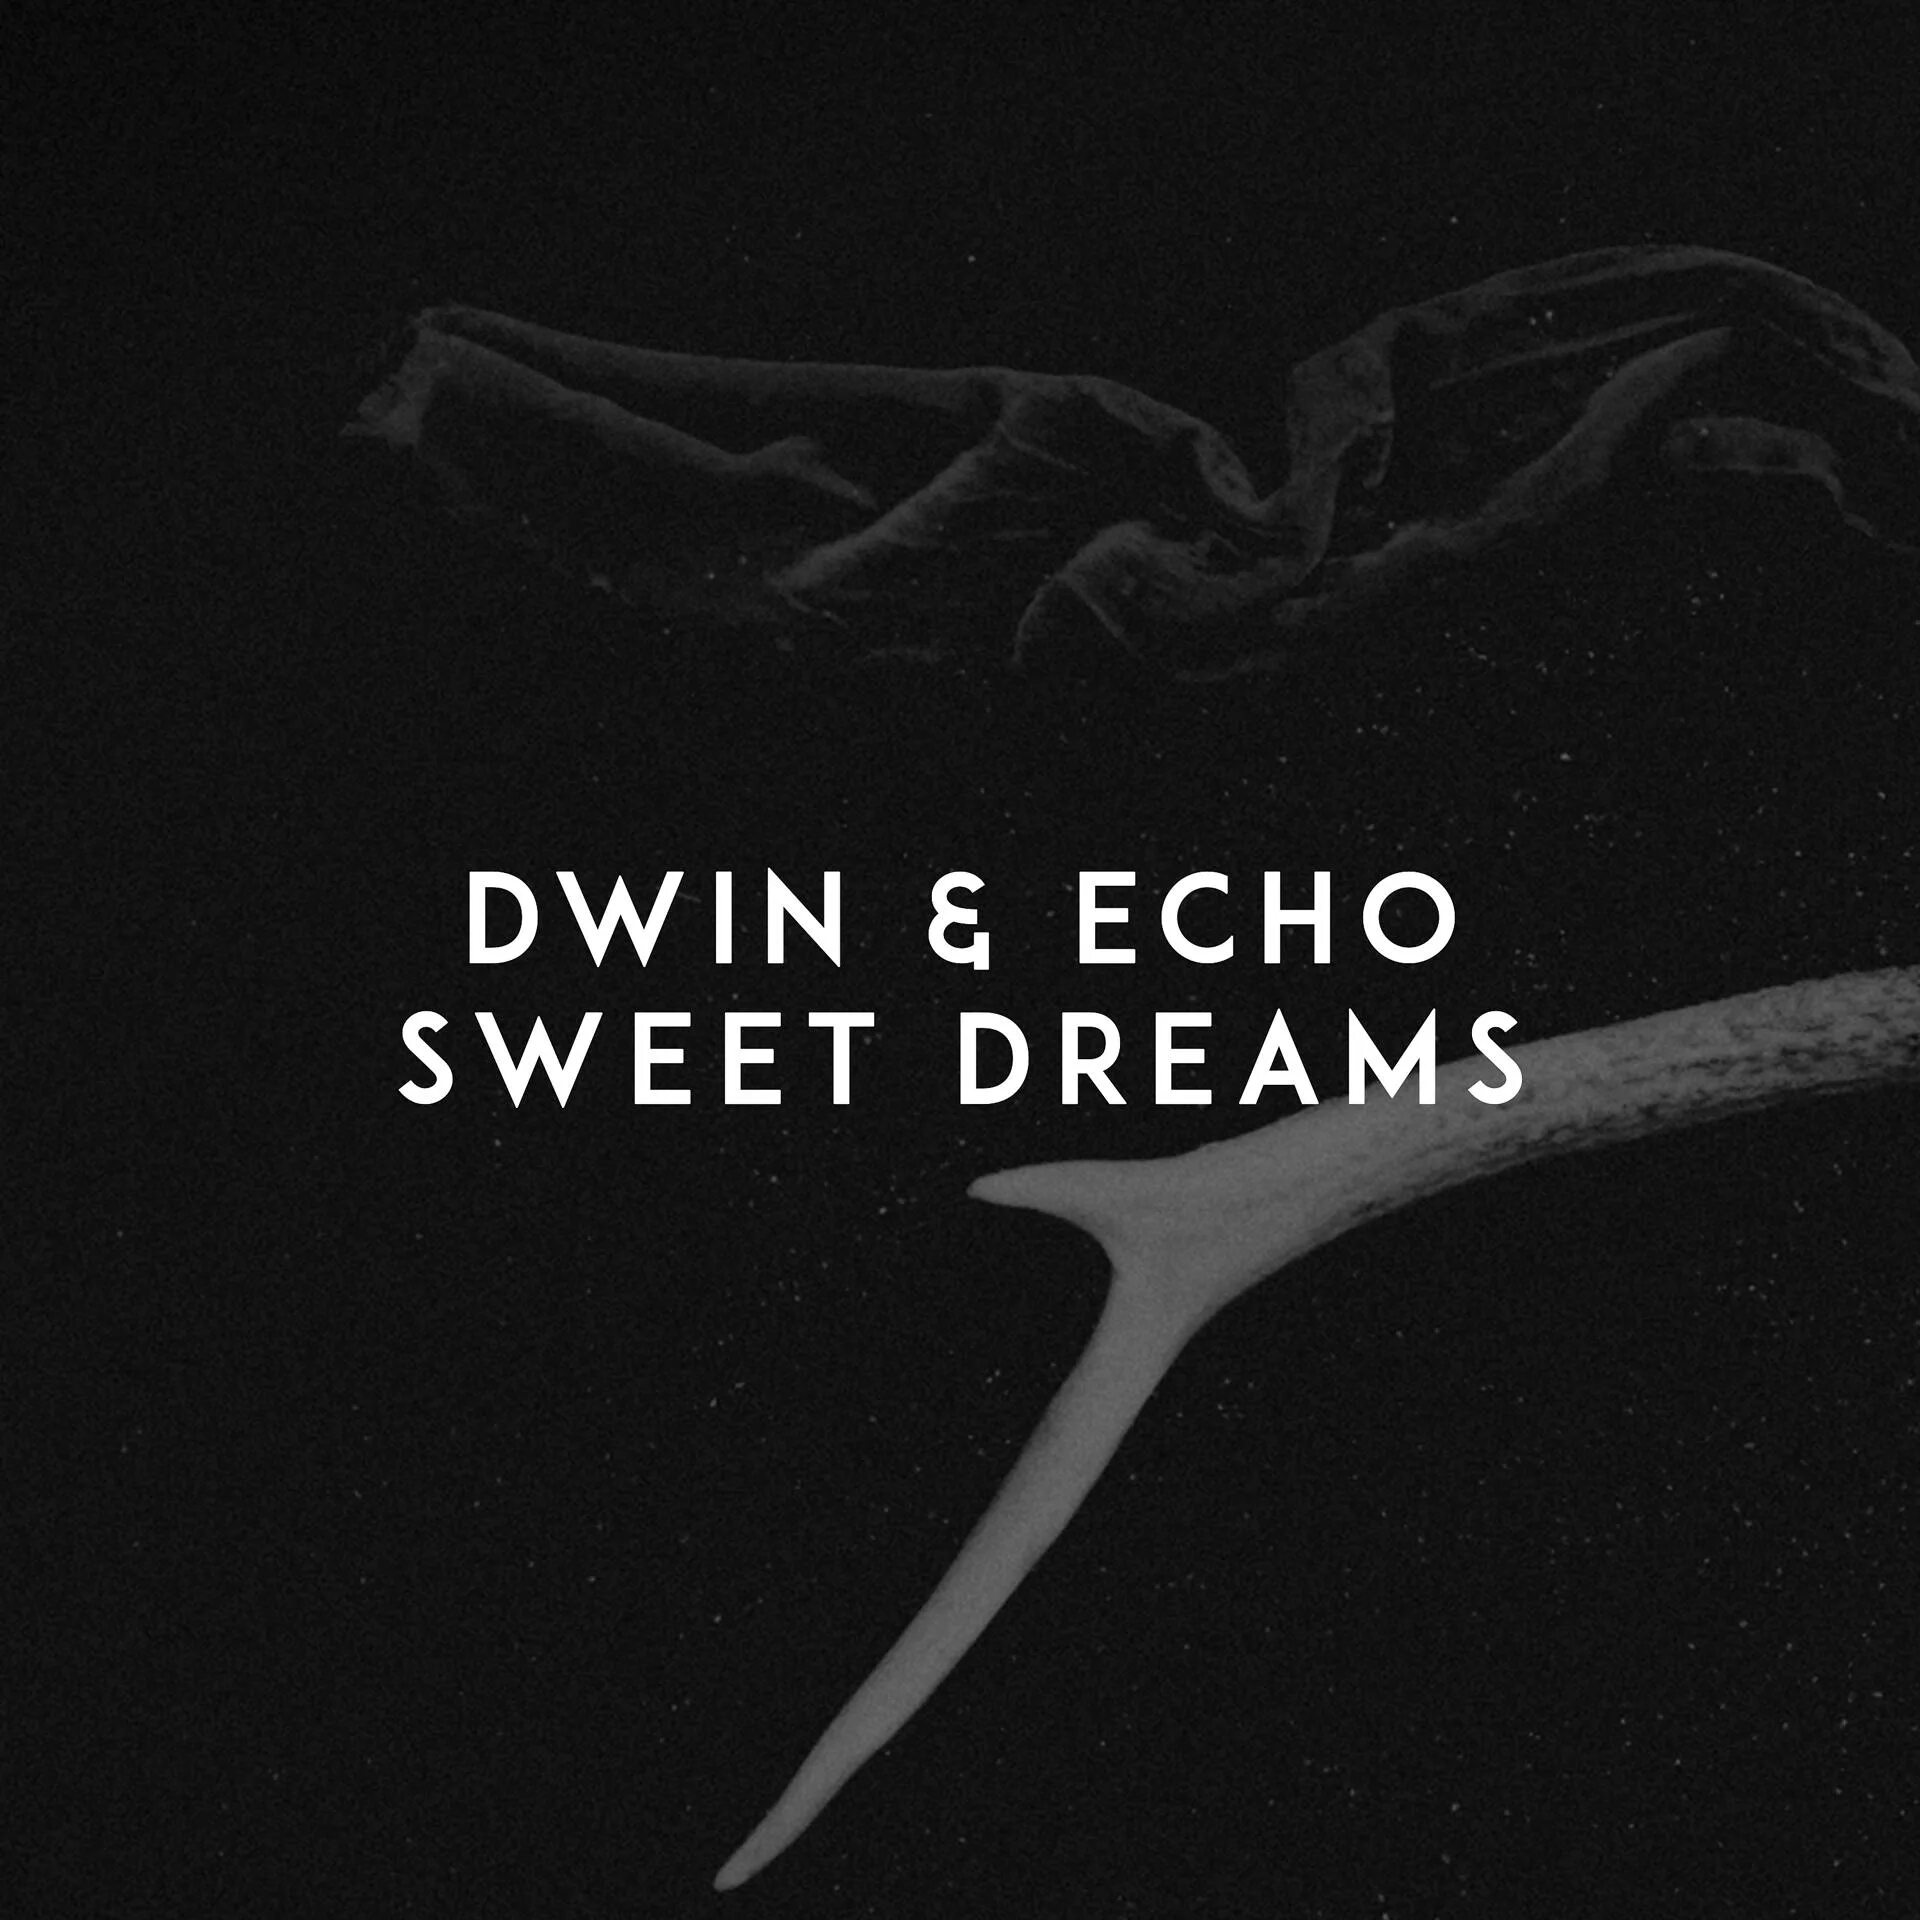 Свит дримс ремикс. Sweet Dreams Dwin Echo. Sweet Dreams(Dwin & Echo Remake) -. Sweet Dreams Remix. Sweet Dreams Dwin Echo Remix.